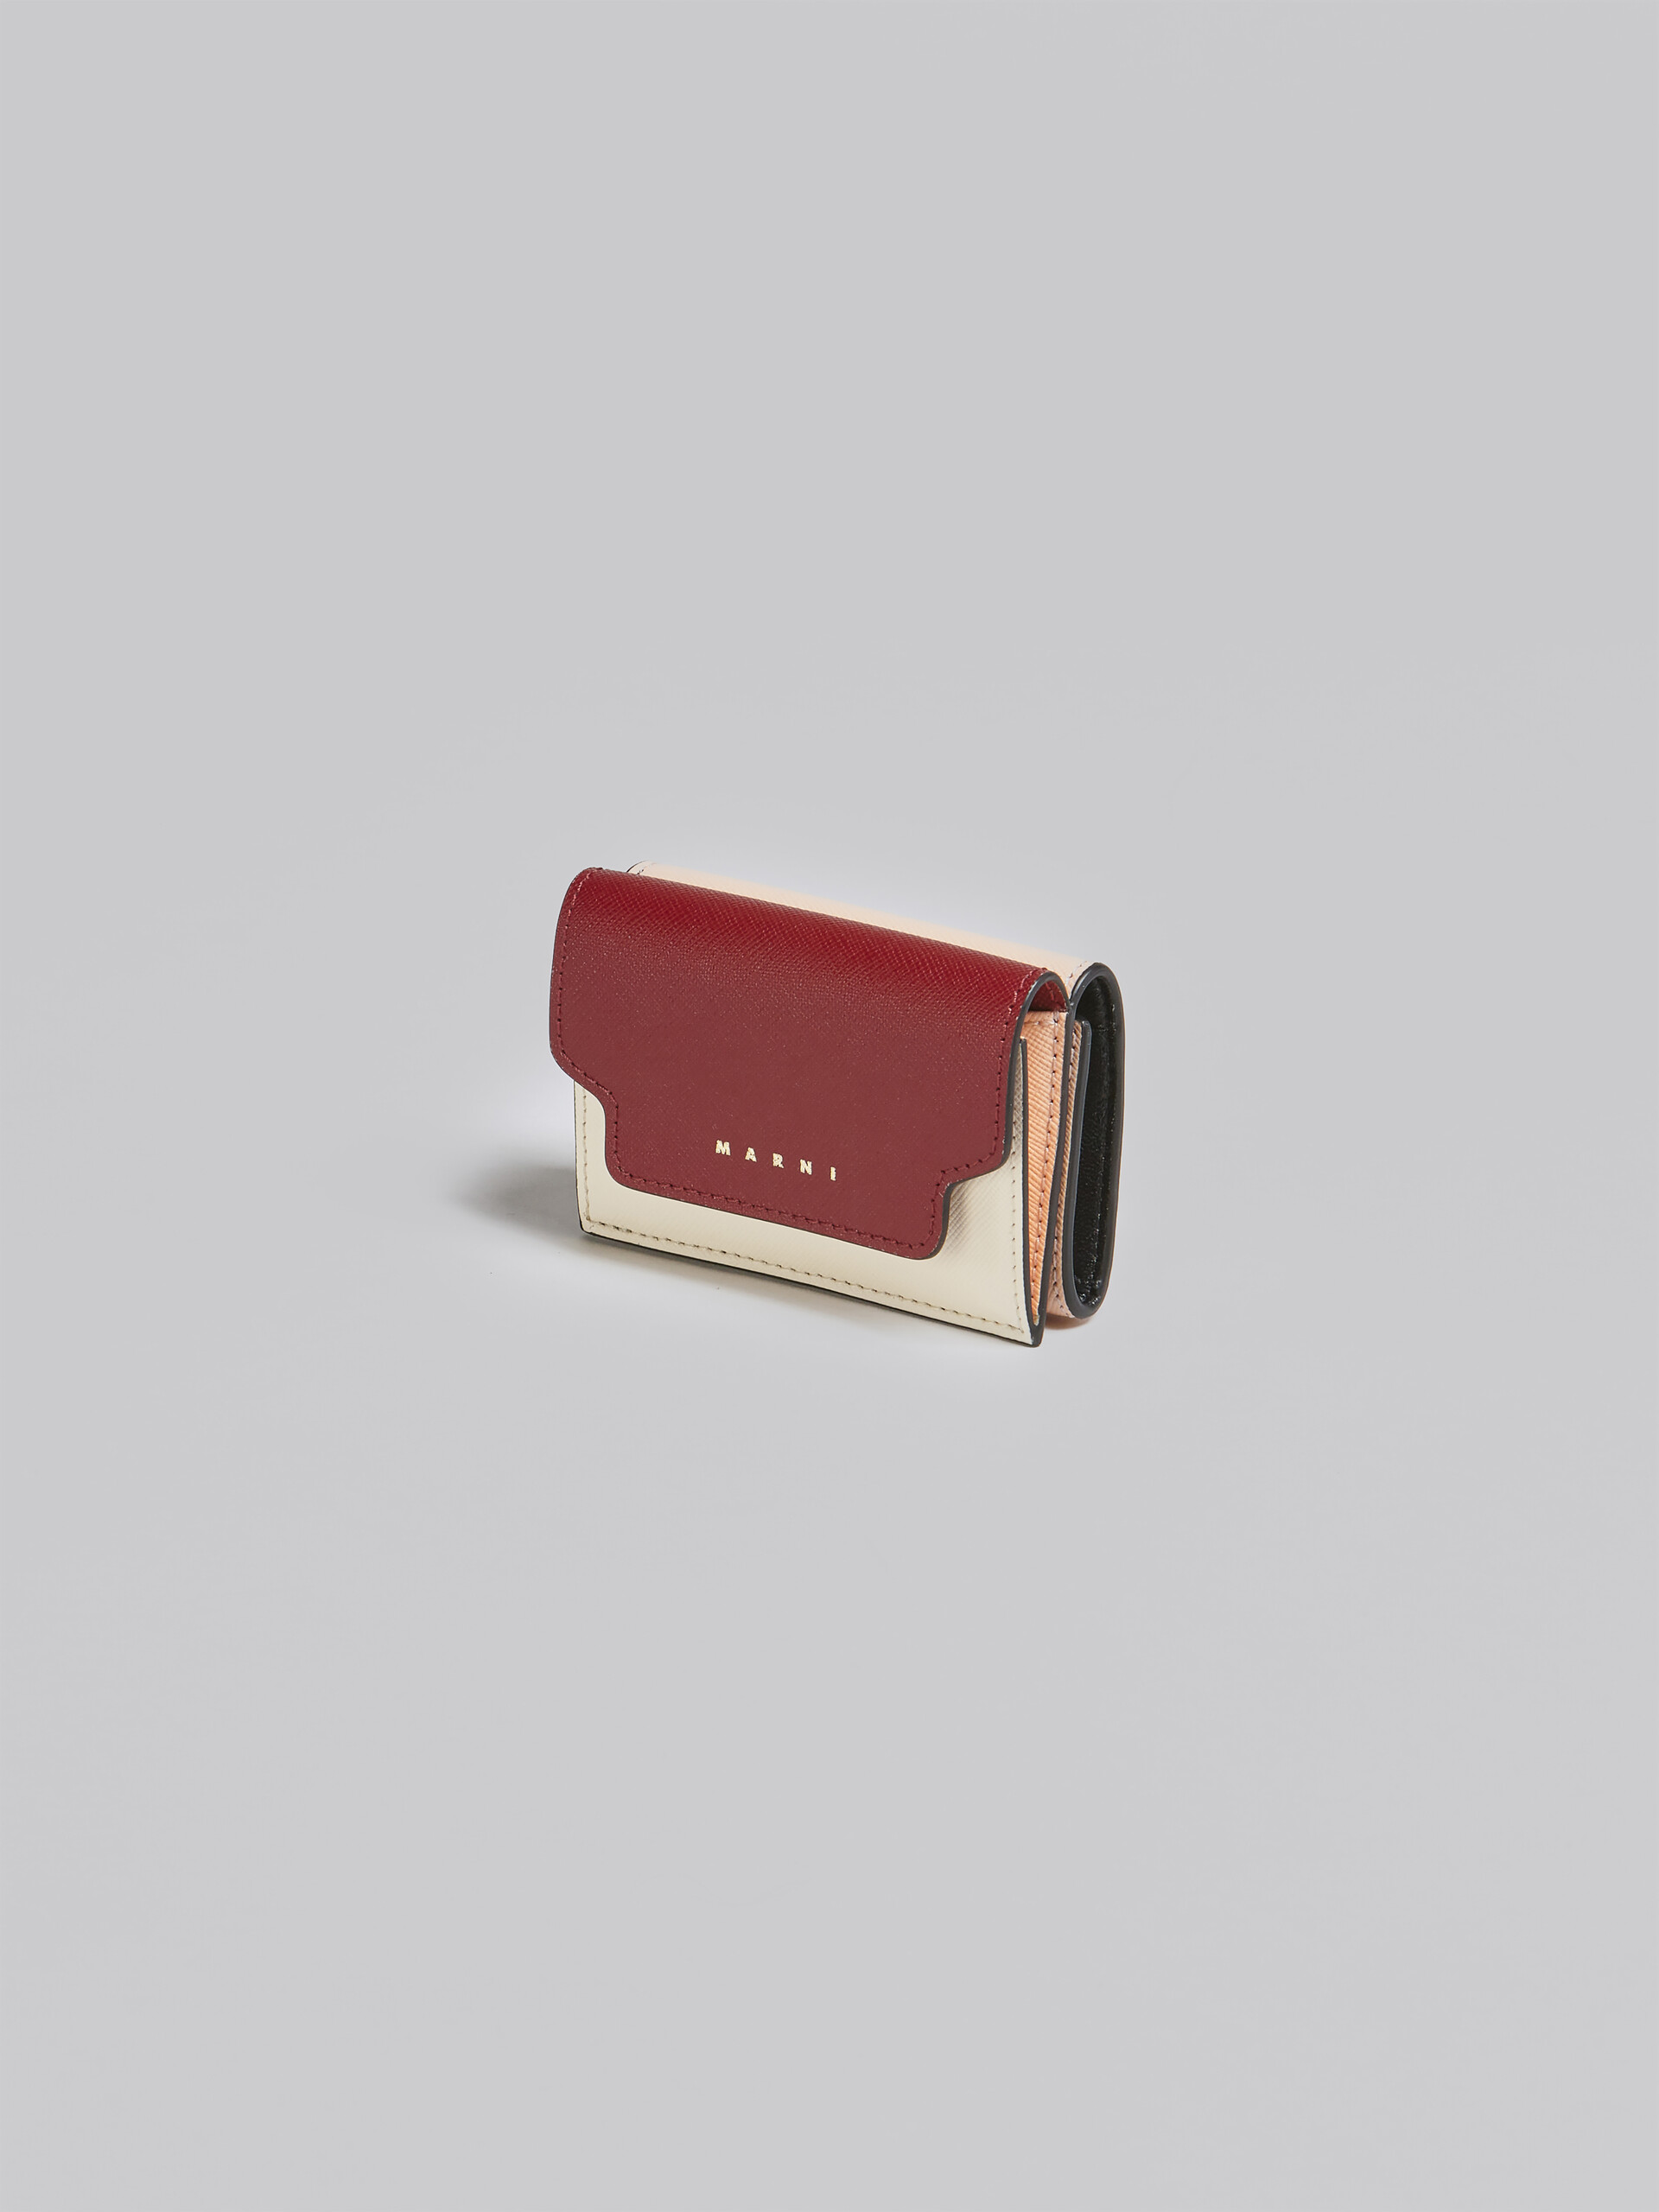 Portafoglio tri-fold in saffiano rosso rosa e bianco - Portafogli - Image 4